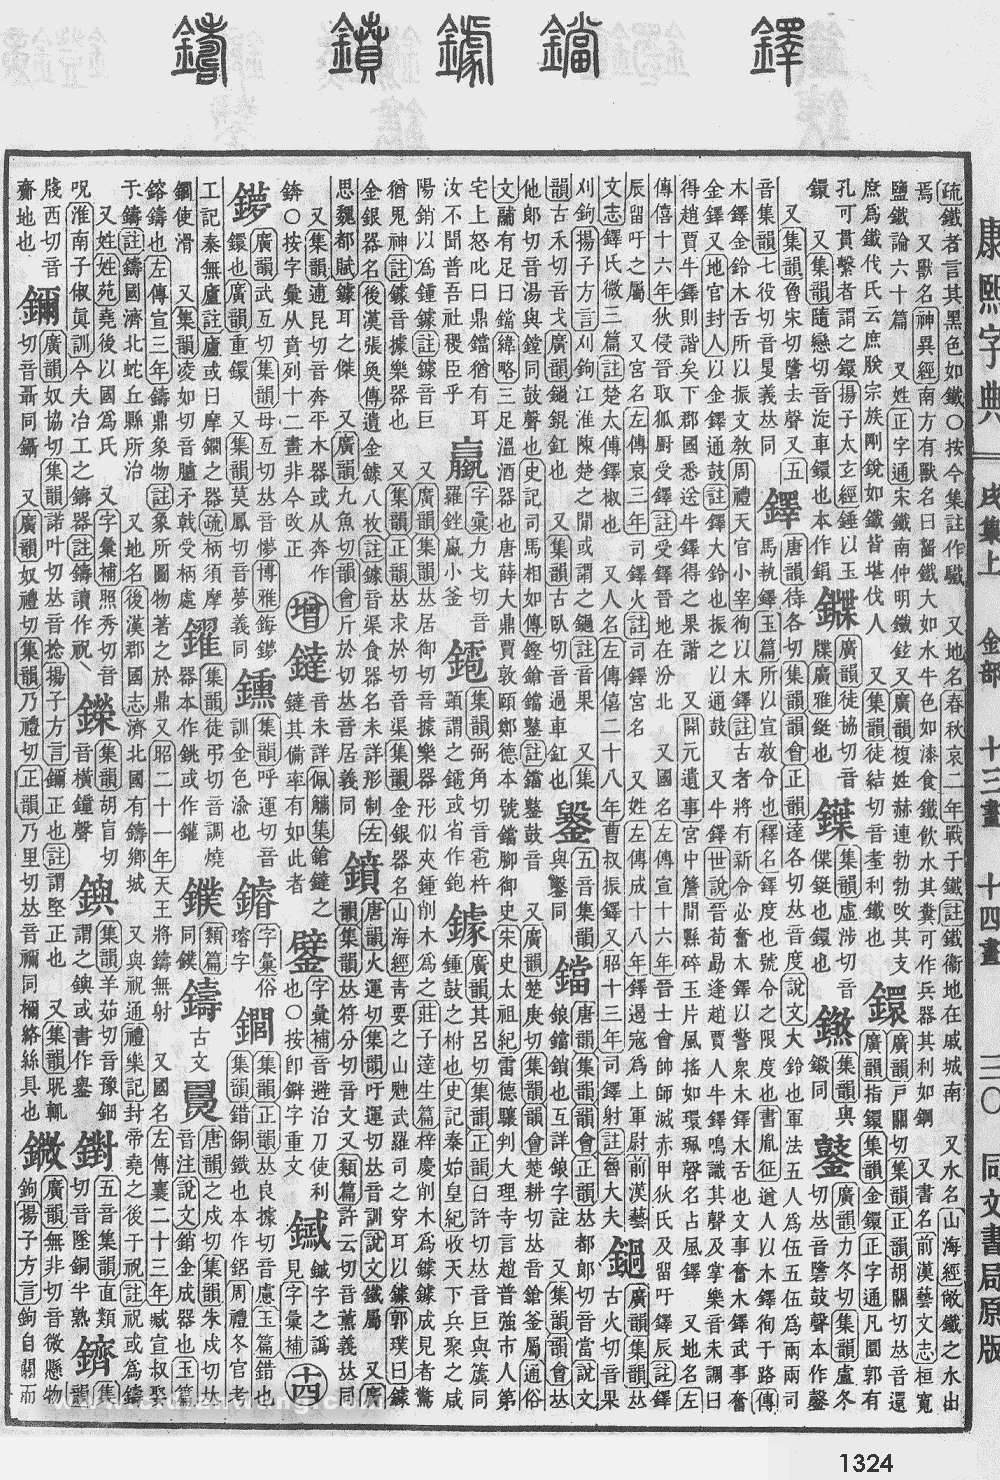 康熙字典掃描版第1324頁